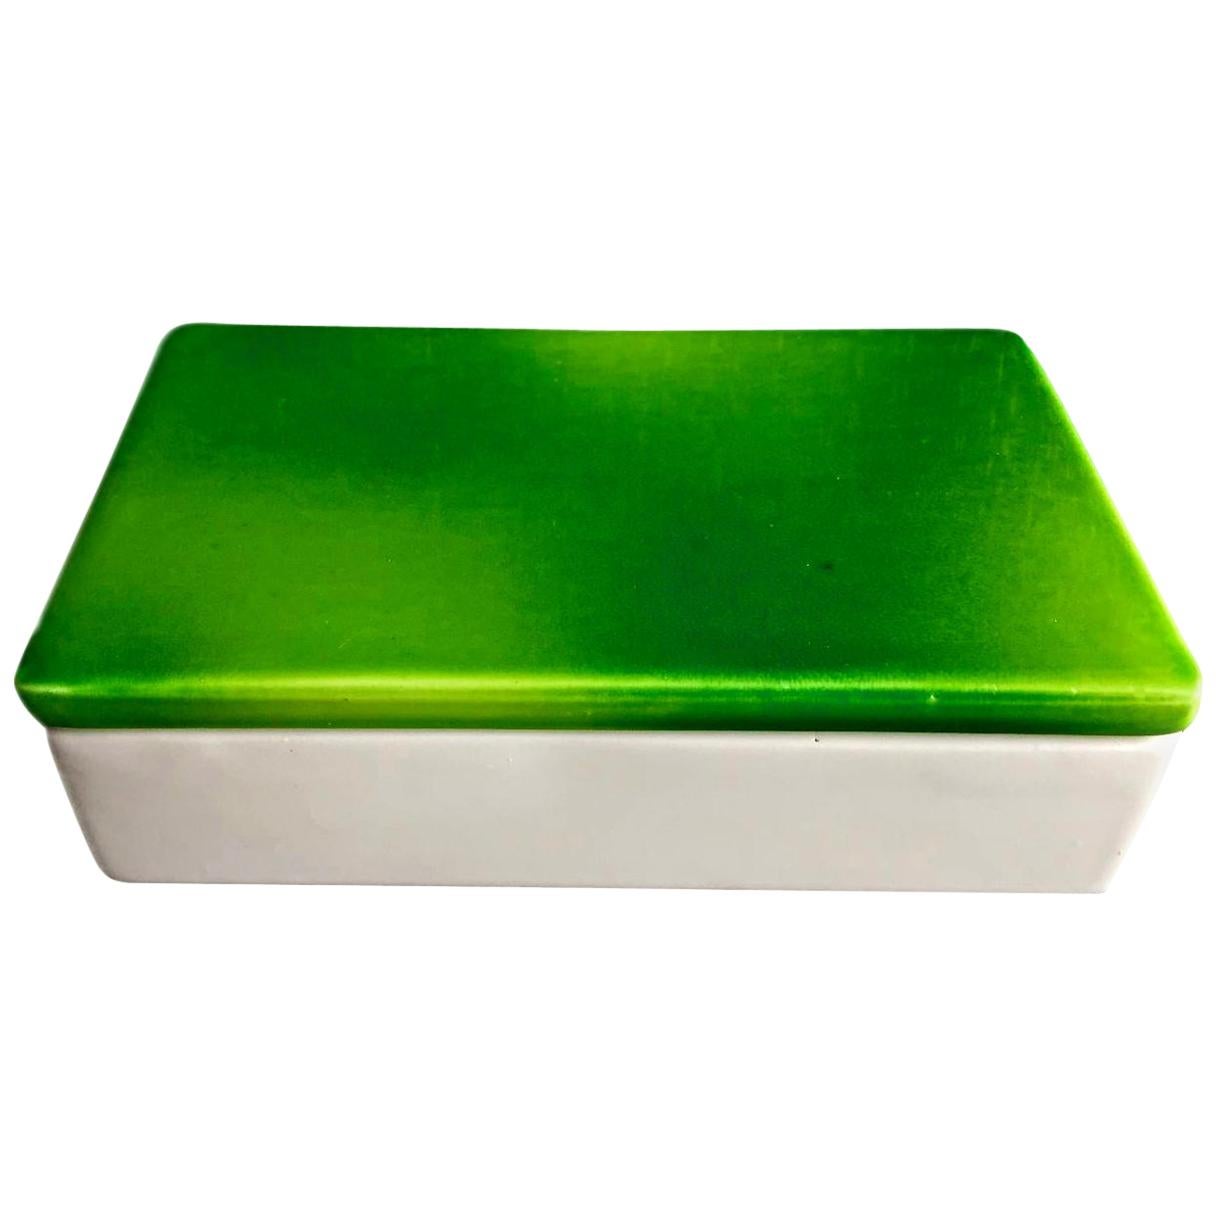 Raymor Green and White Ceramic Box